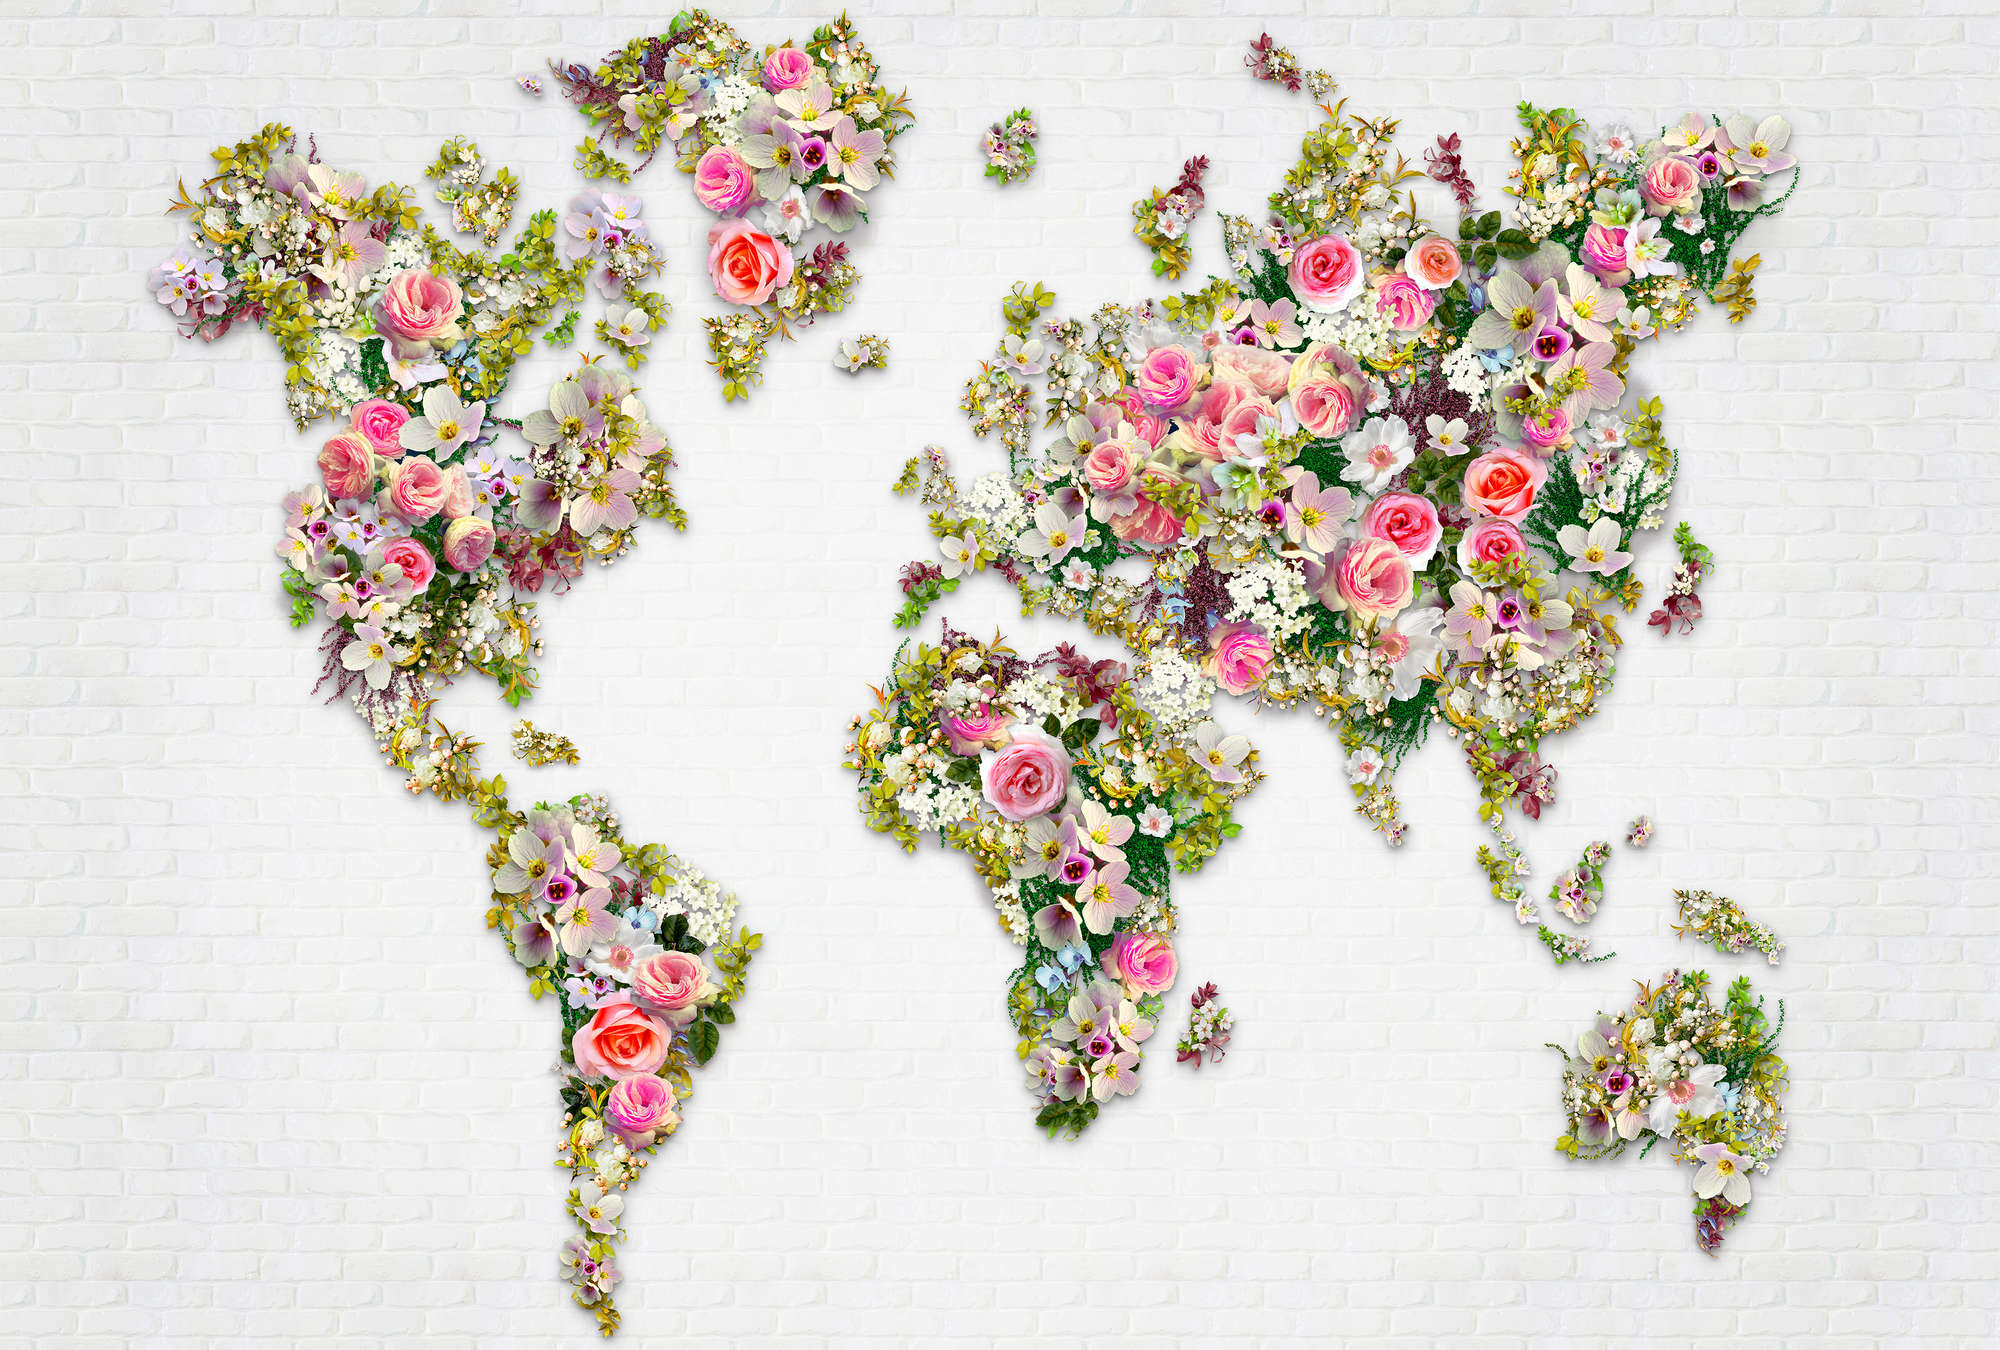             Papier peint panoramique Roses & fleurs comme carte du monde sur un mur blanc
        